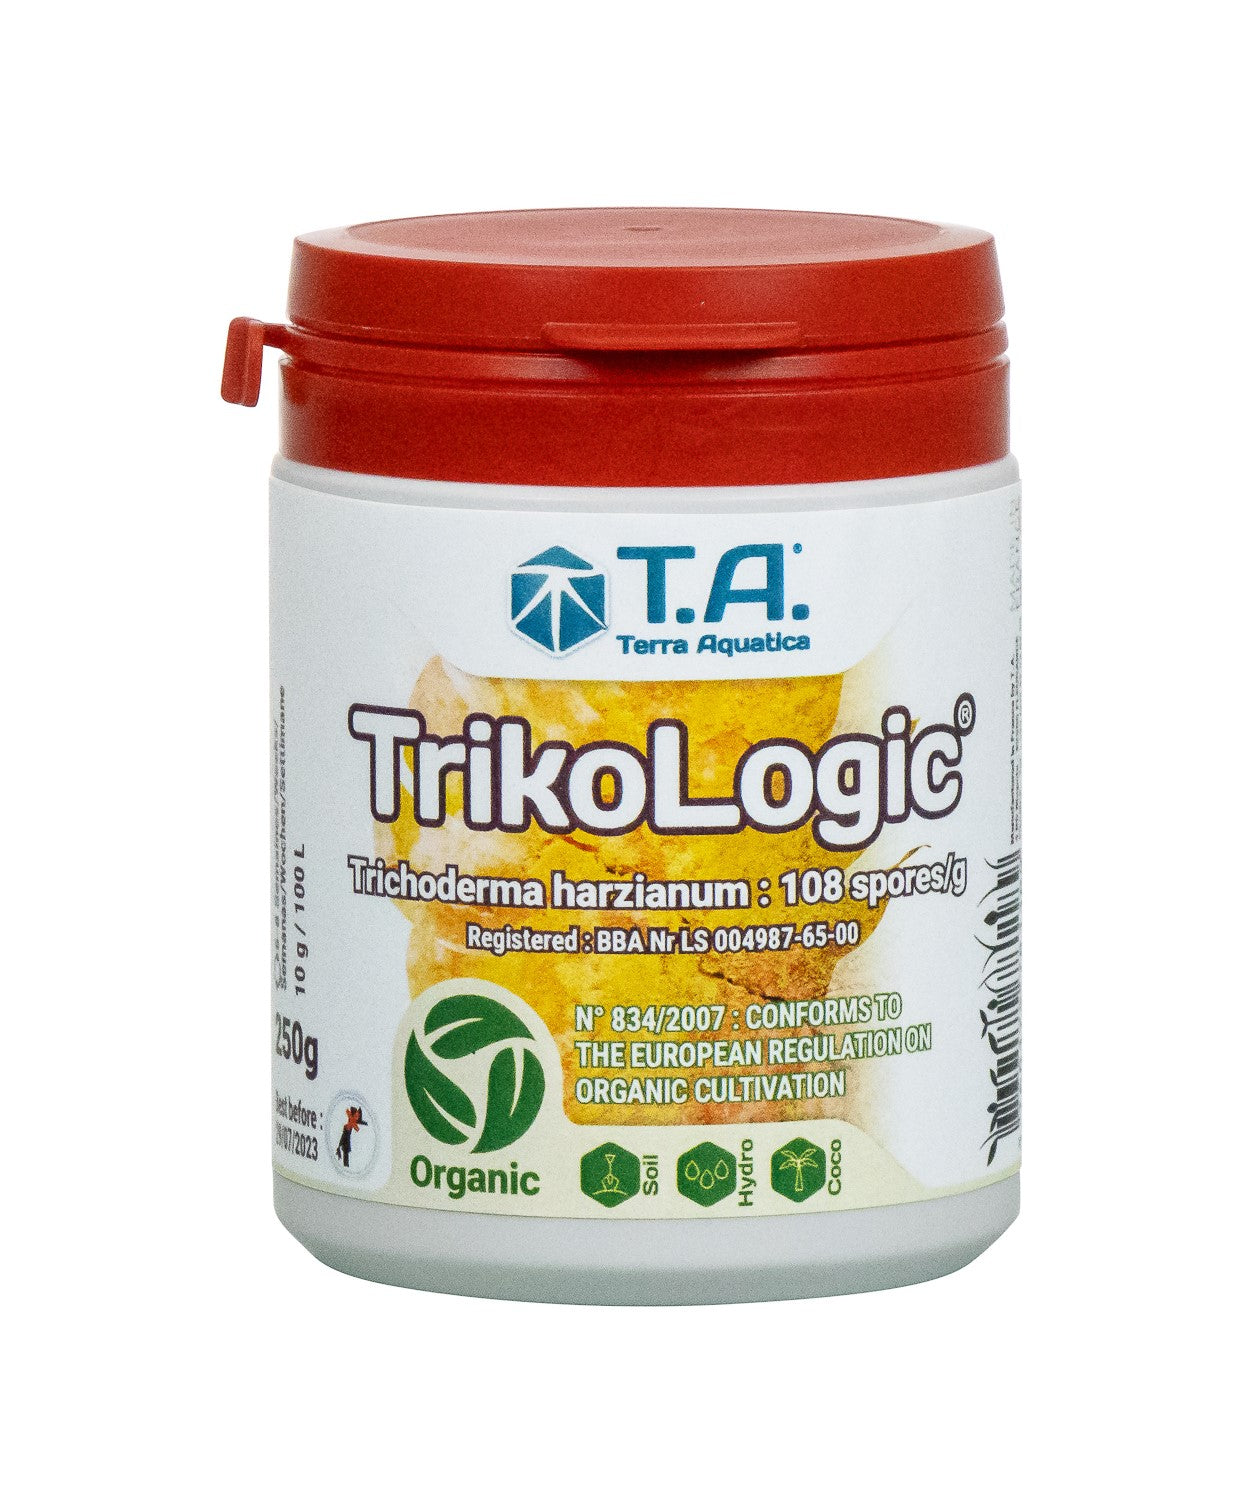 ტრიკოლოჯიკი - Trikologic